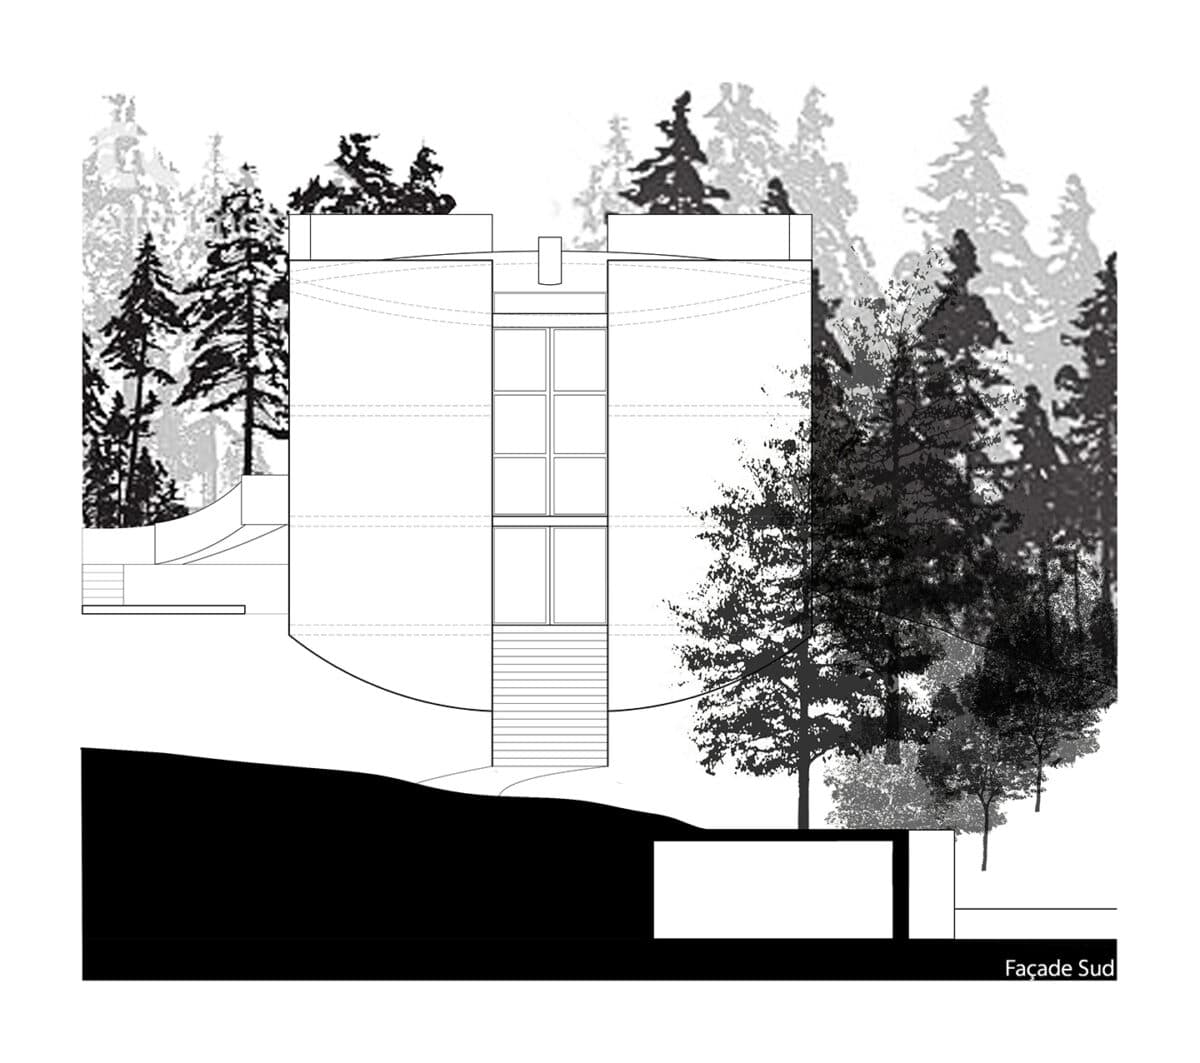 Le plus grand tronc de la forêt – Création d’une villa ronde au milieu des arbres, La Chaux-de-Fonds